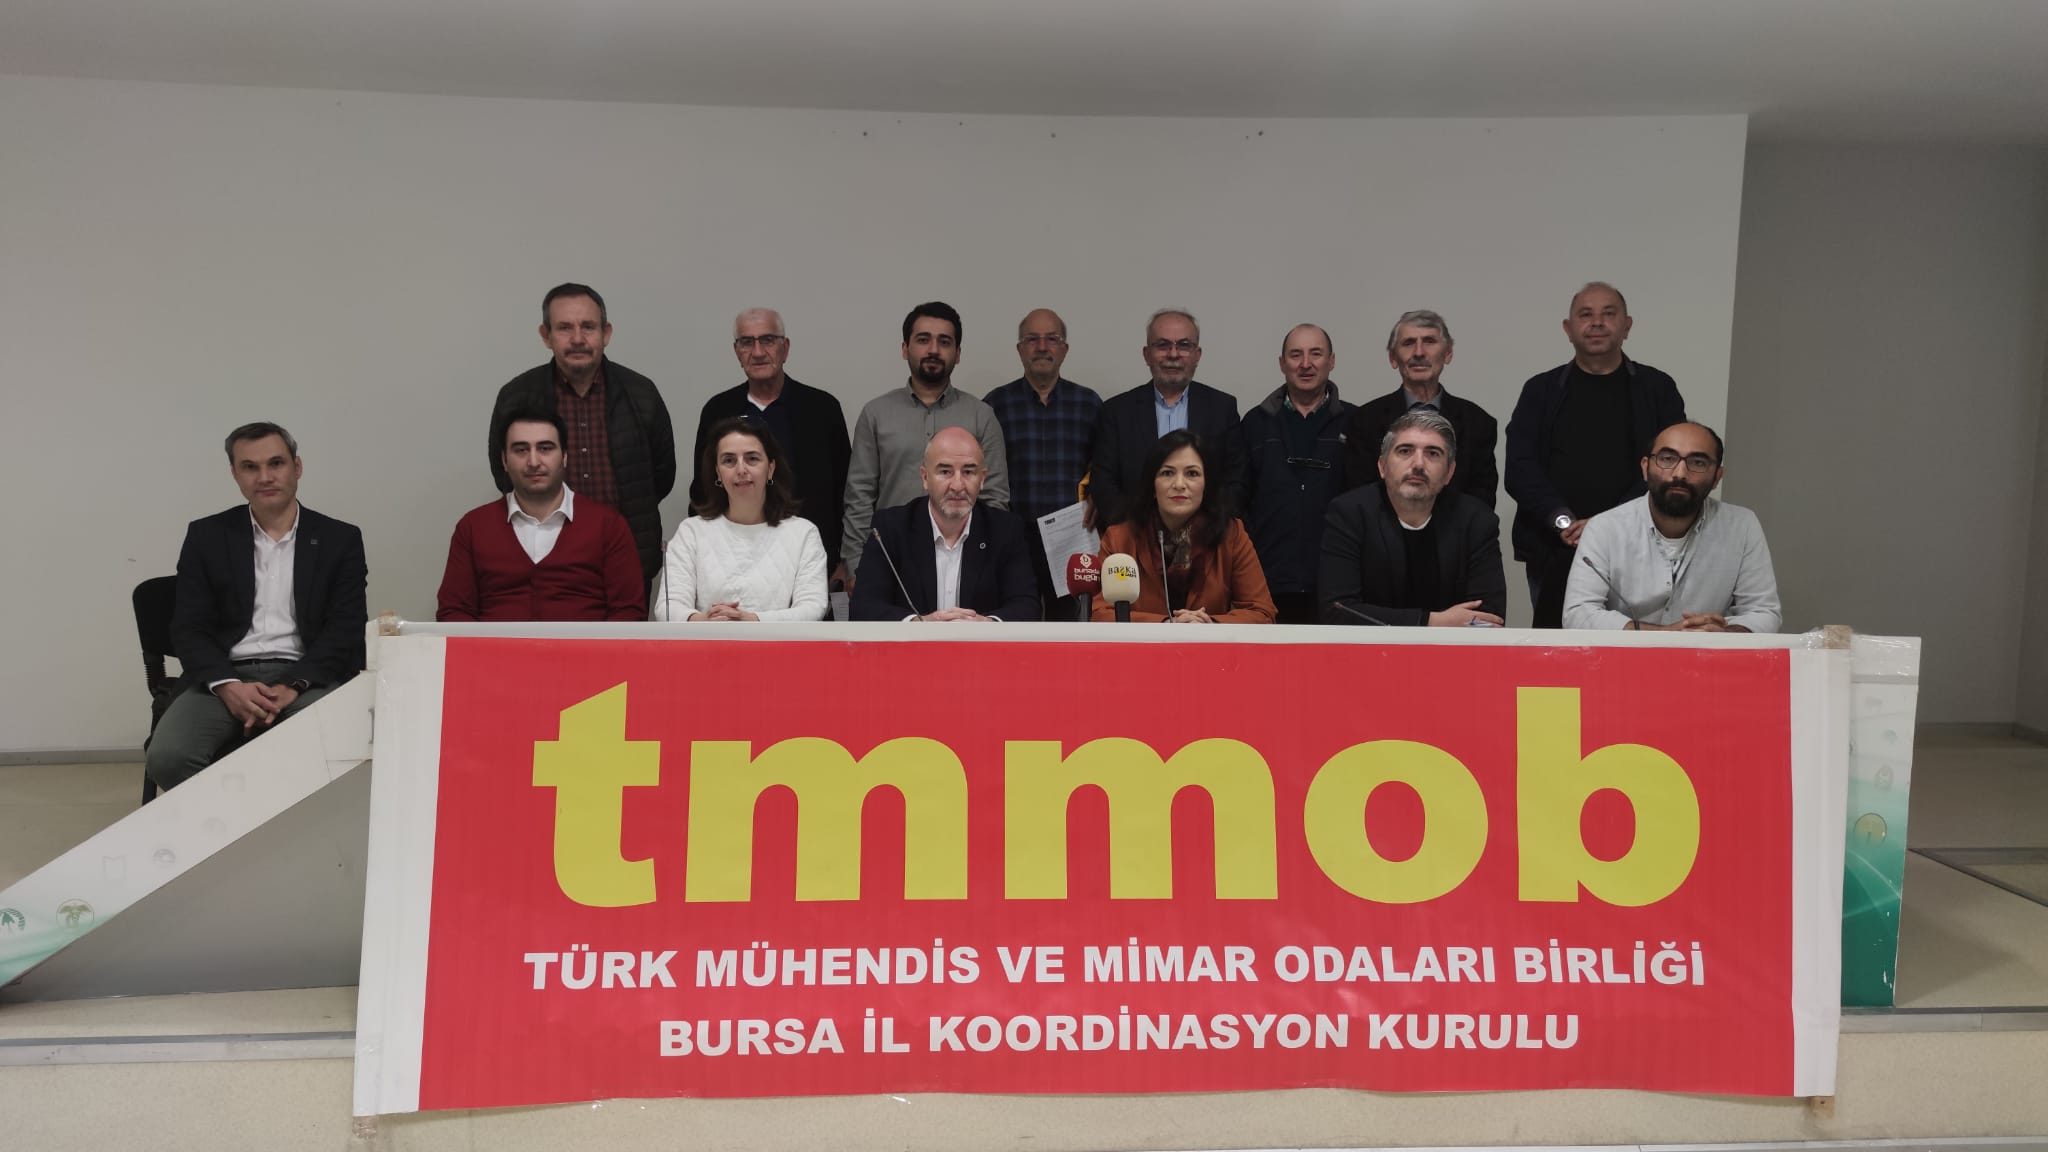 TMMOB on Twitter: "TMMOB Bursa İl Koordinasyon Kurulu Gezi Davası karar  duruşmasının birinci yılı dolayısıyla 25 Nisan 2023 tarihinde bir basın  açıklaması yaptı. https://t.co/QyzP3aYPWx https://t.co/9PUC94Z6fd" / Twitter